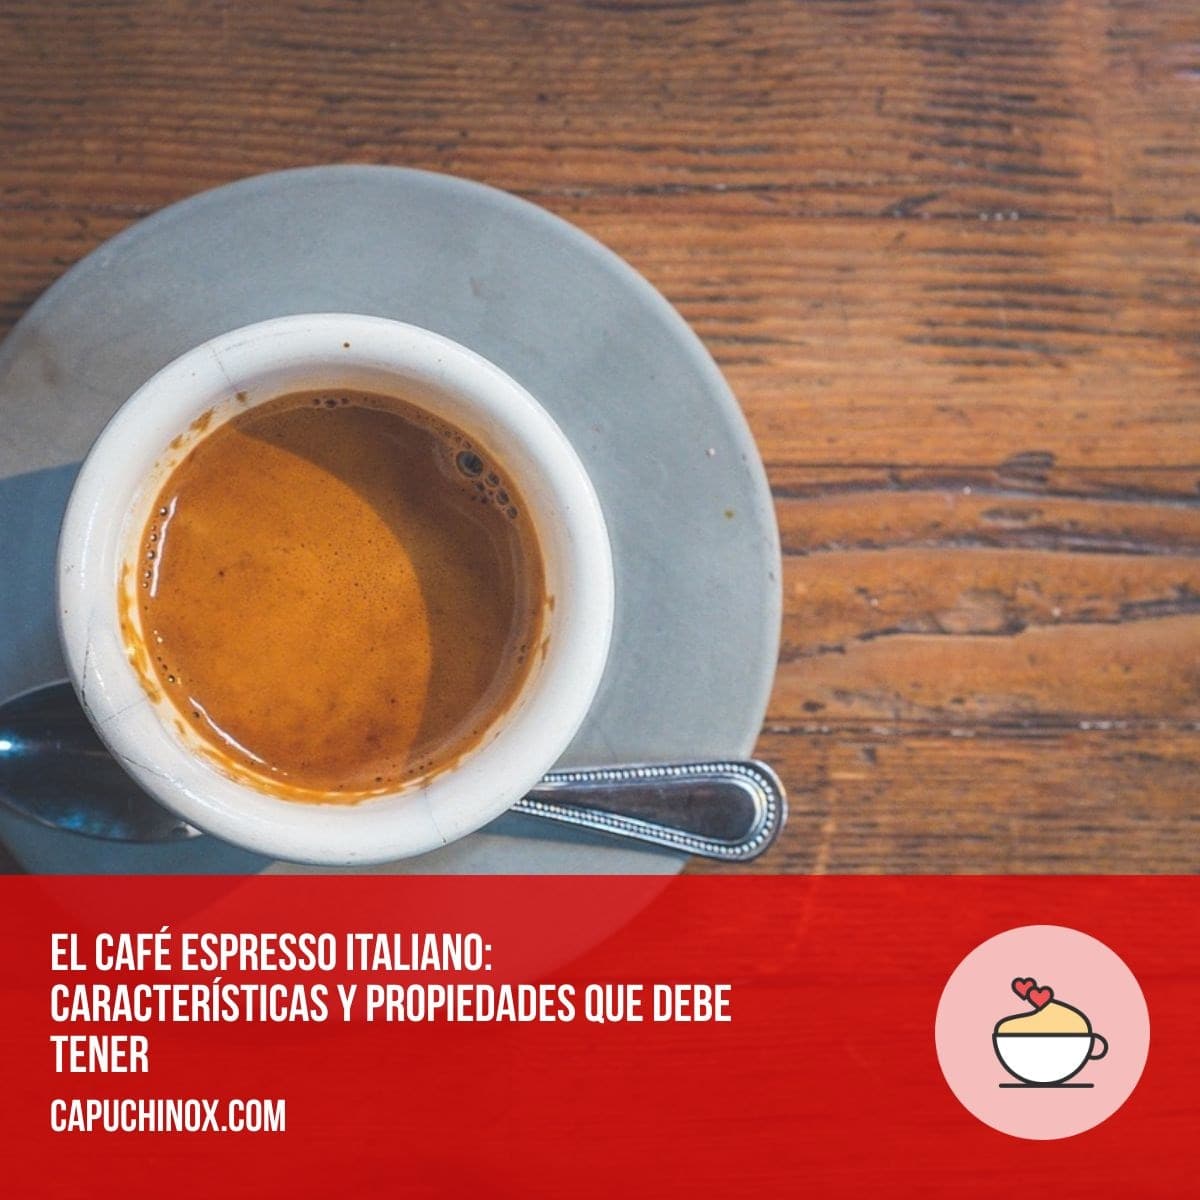 El café espresso italiano: características y propiedades que debe tener